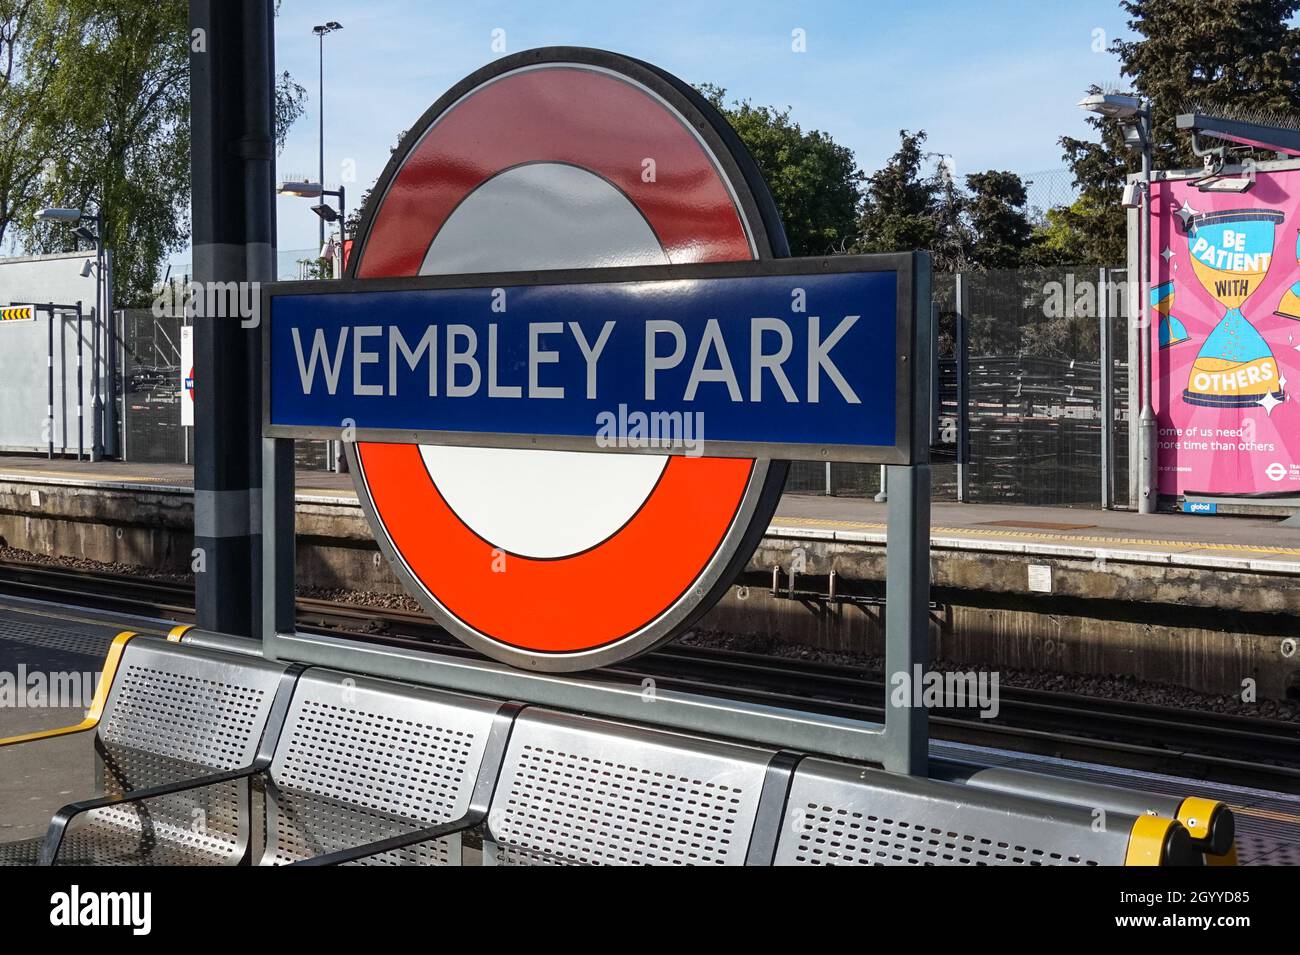 Métro Wembley Park, station de métro rond panneau Londres Angleterre Royaume-Uni Banque D'Images